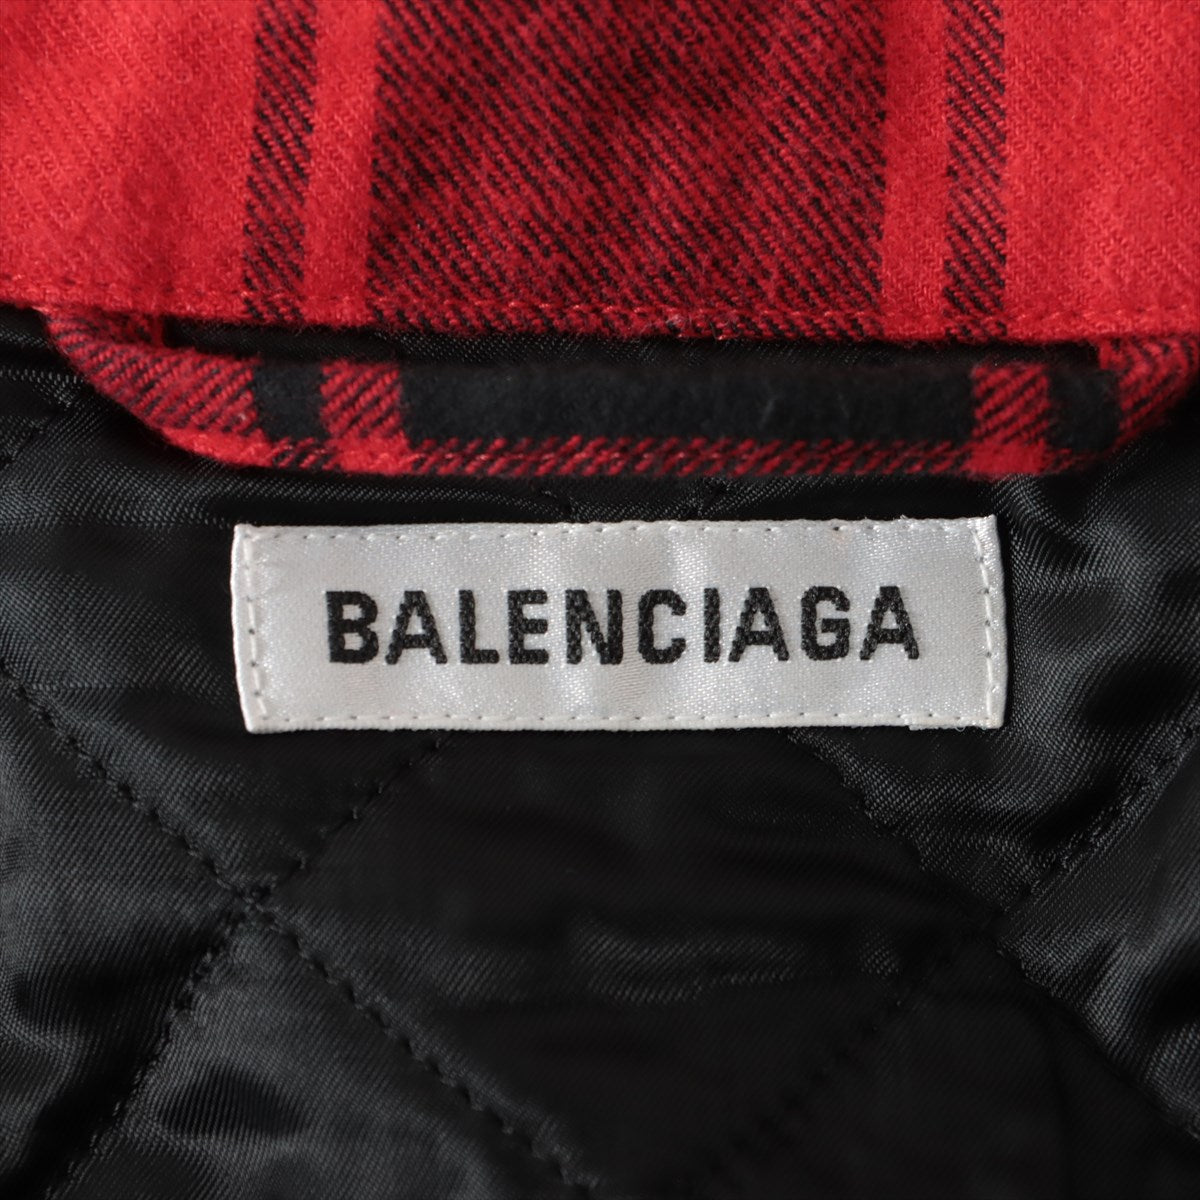 バレンシアガ 19年 コットン 中綿ジャケット 34 メンズ レッド×ブラック  スウィングカナディアンチェックシャツ 583874